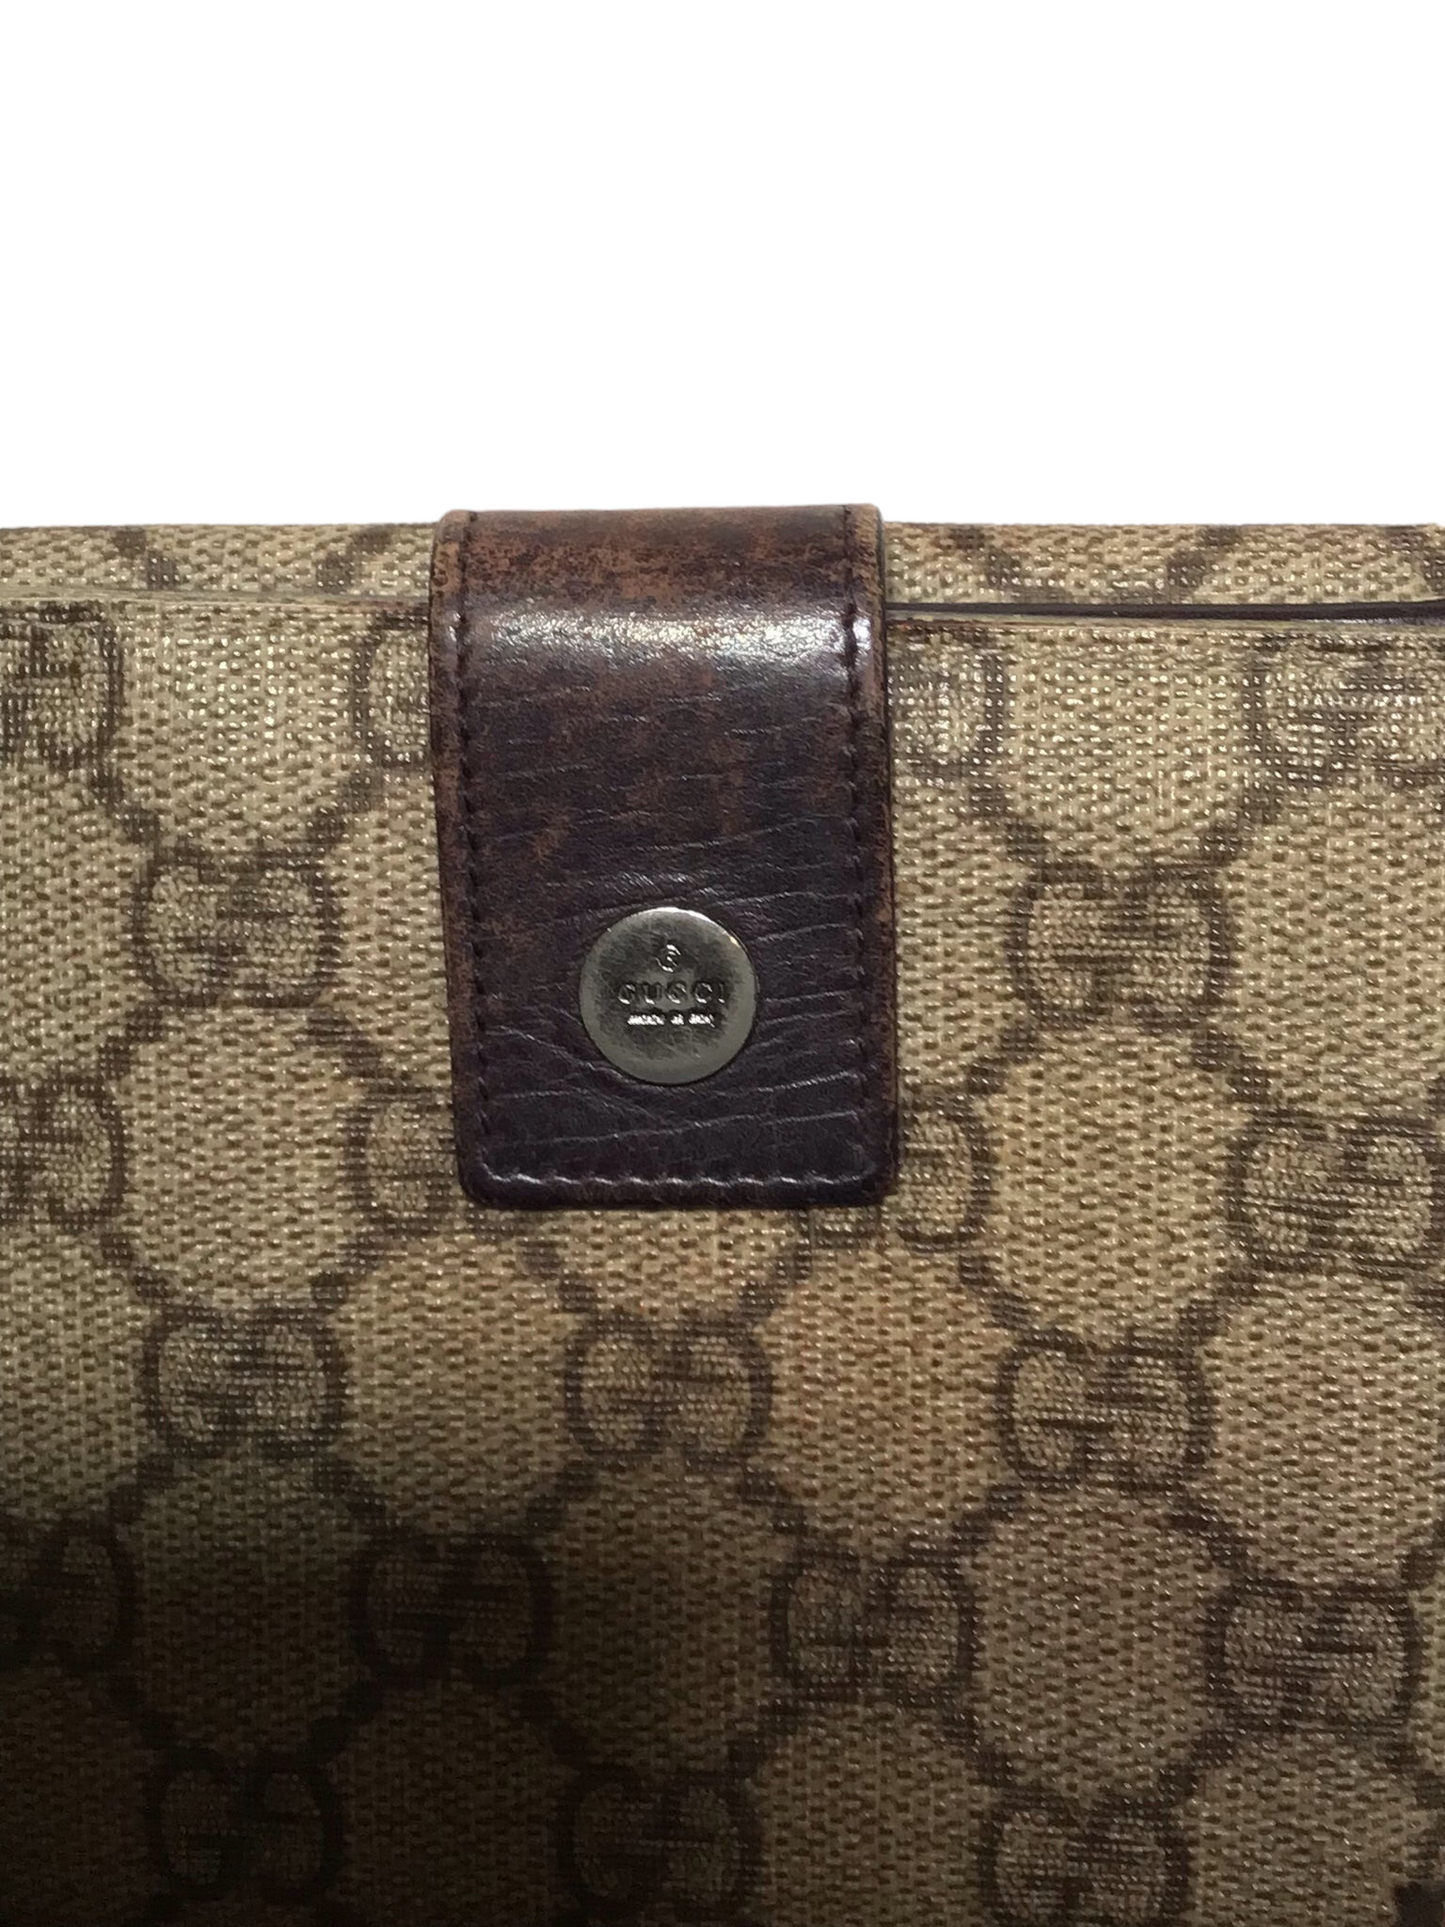 Gucci Monogram Purse/Wallet